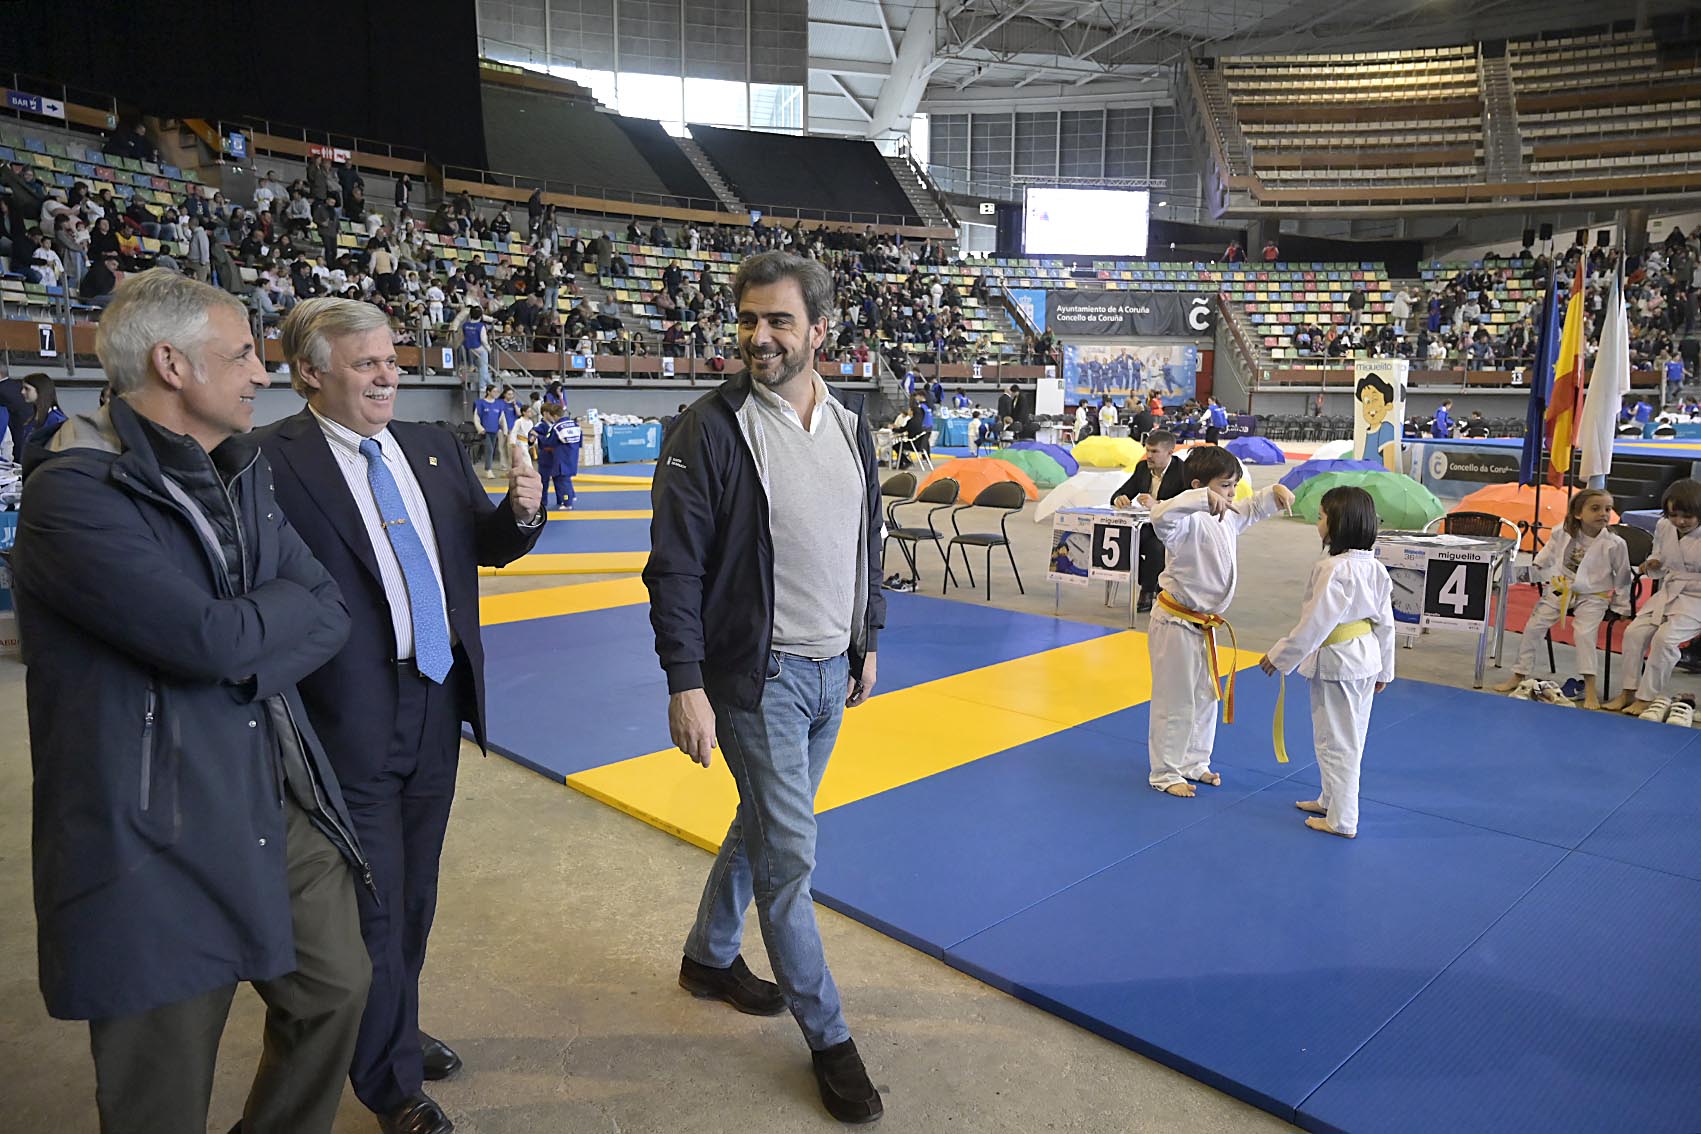 Image 1 of article Diego Calvo recolle o premio concedido á Xunta na 36ª edición do Trofeo de judo Miguelito